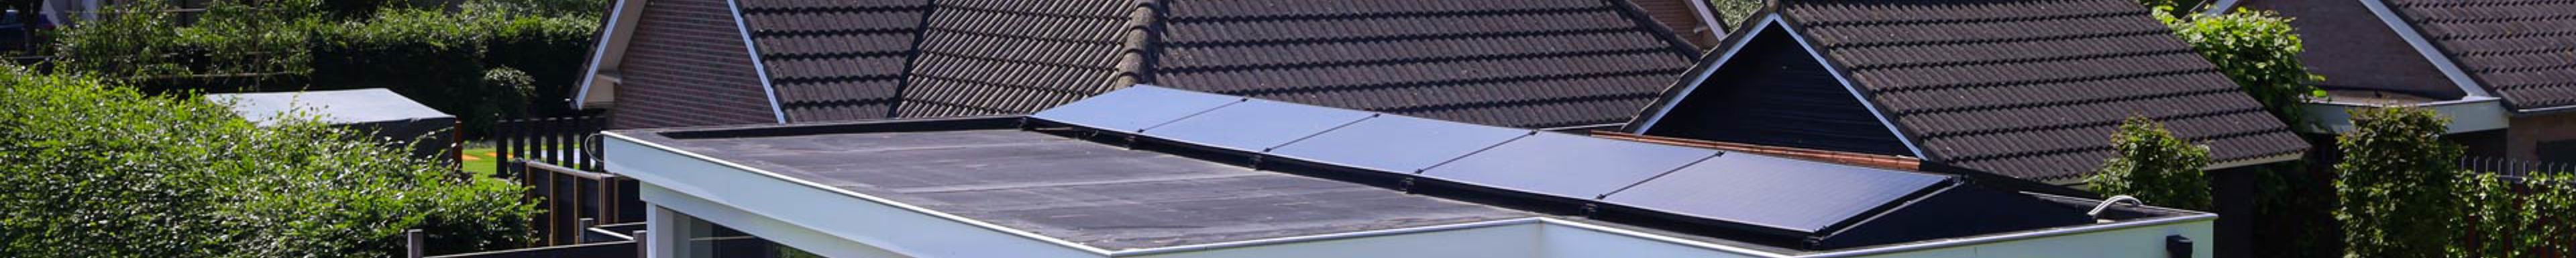 Zonnepanelen schuin geplaatst op een plat dak van een bijgebouw van een vrijstaande woning